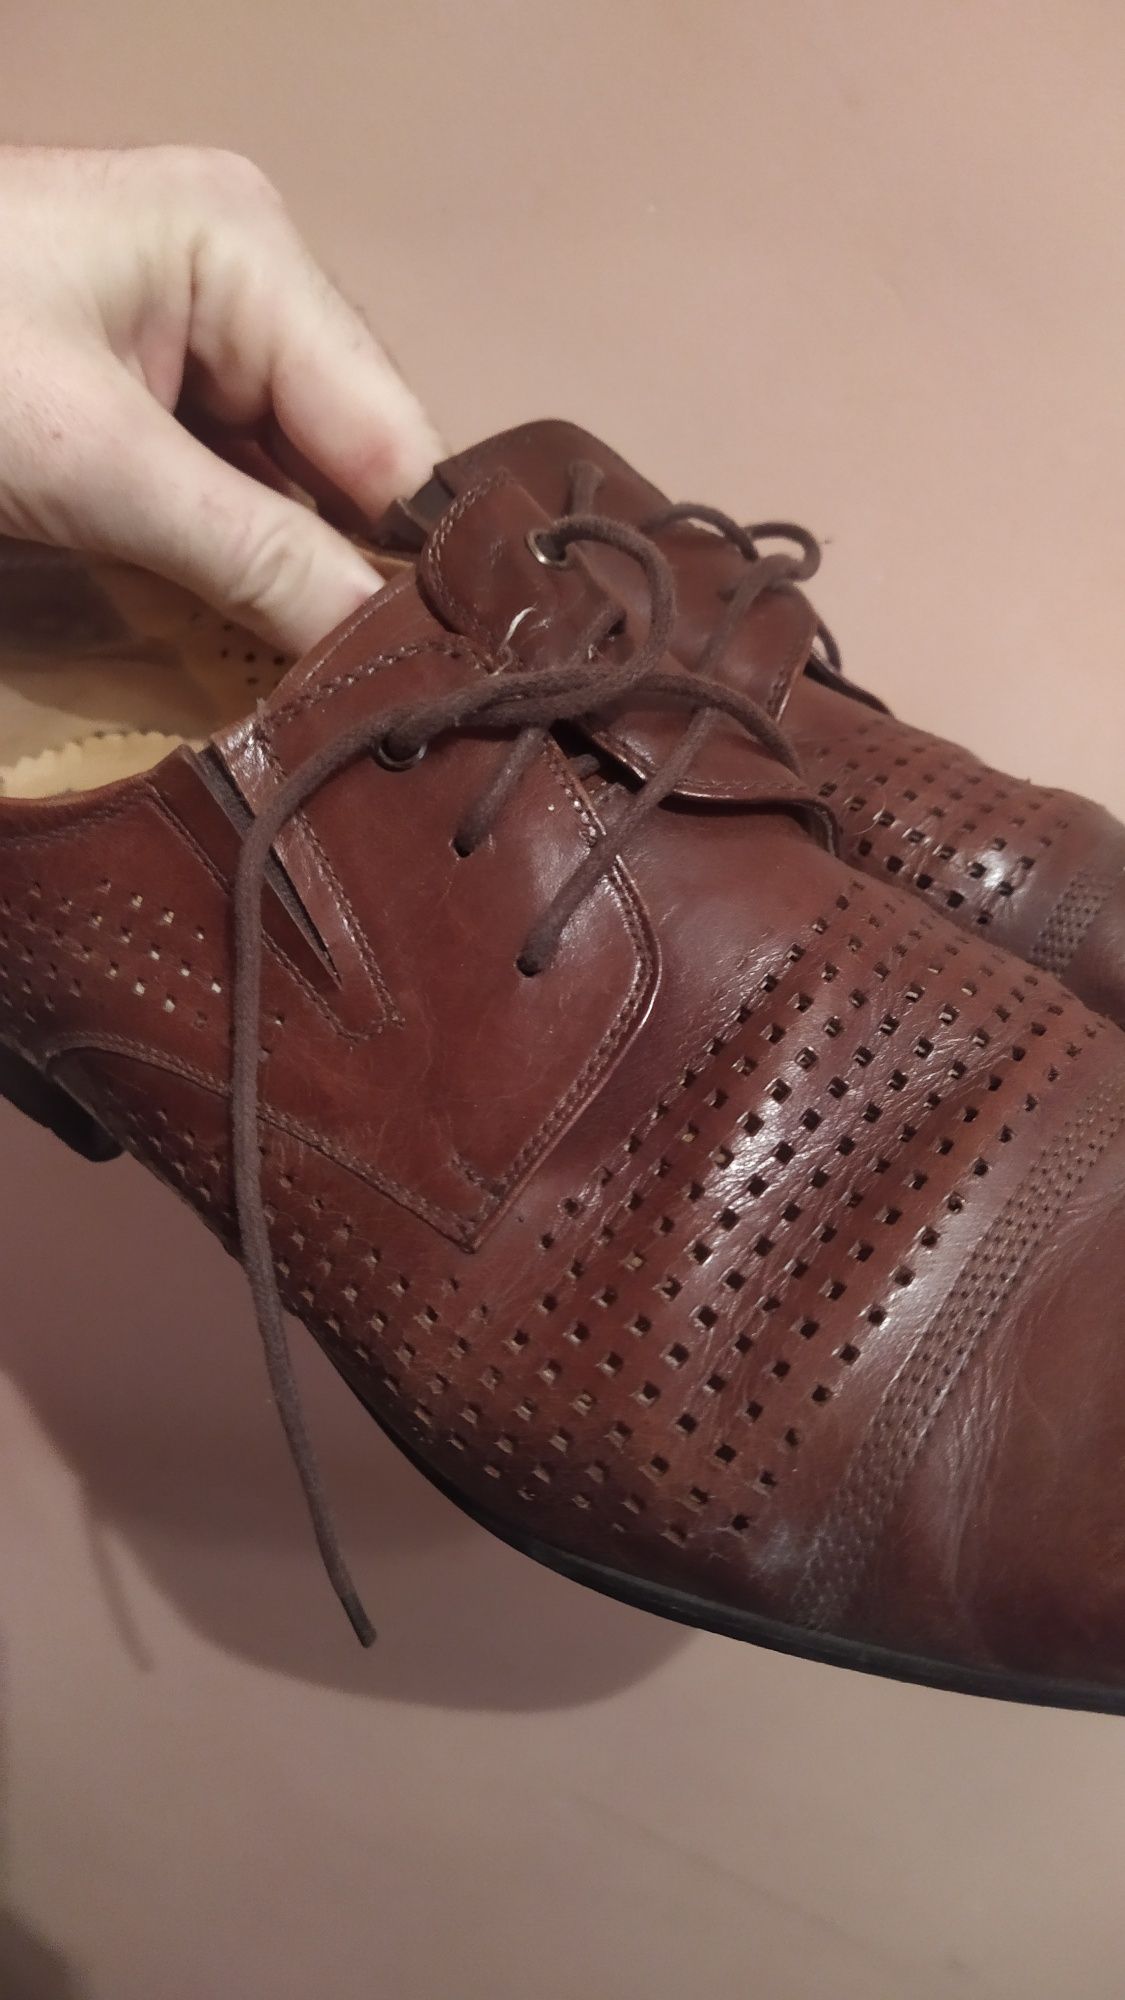 Туфли мужские из натуральной кожи